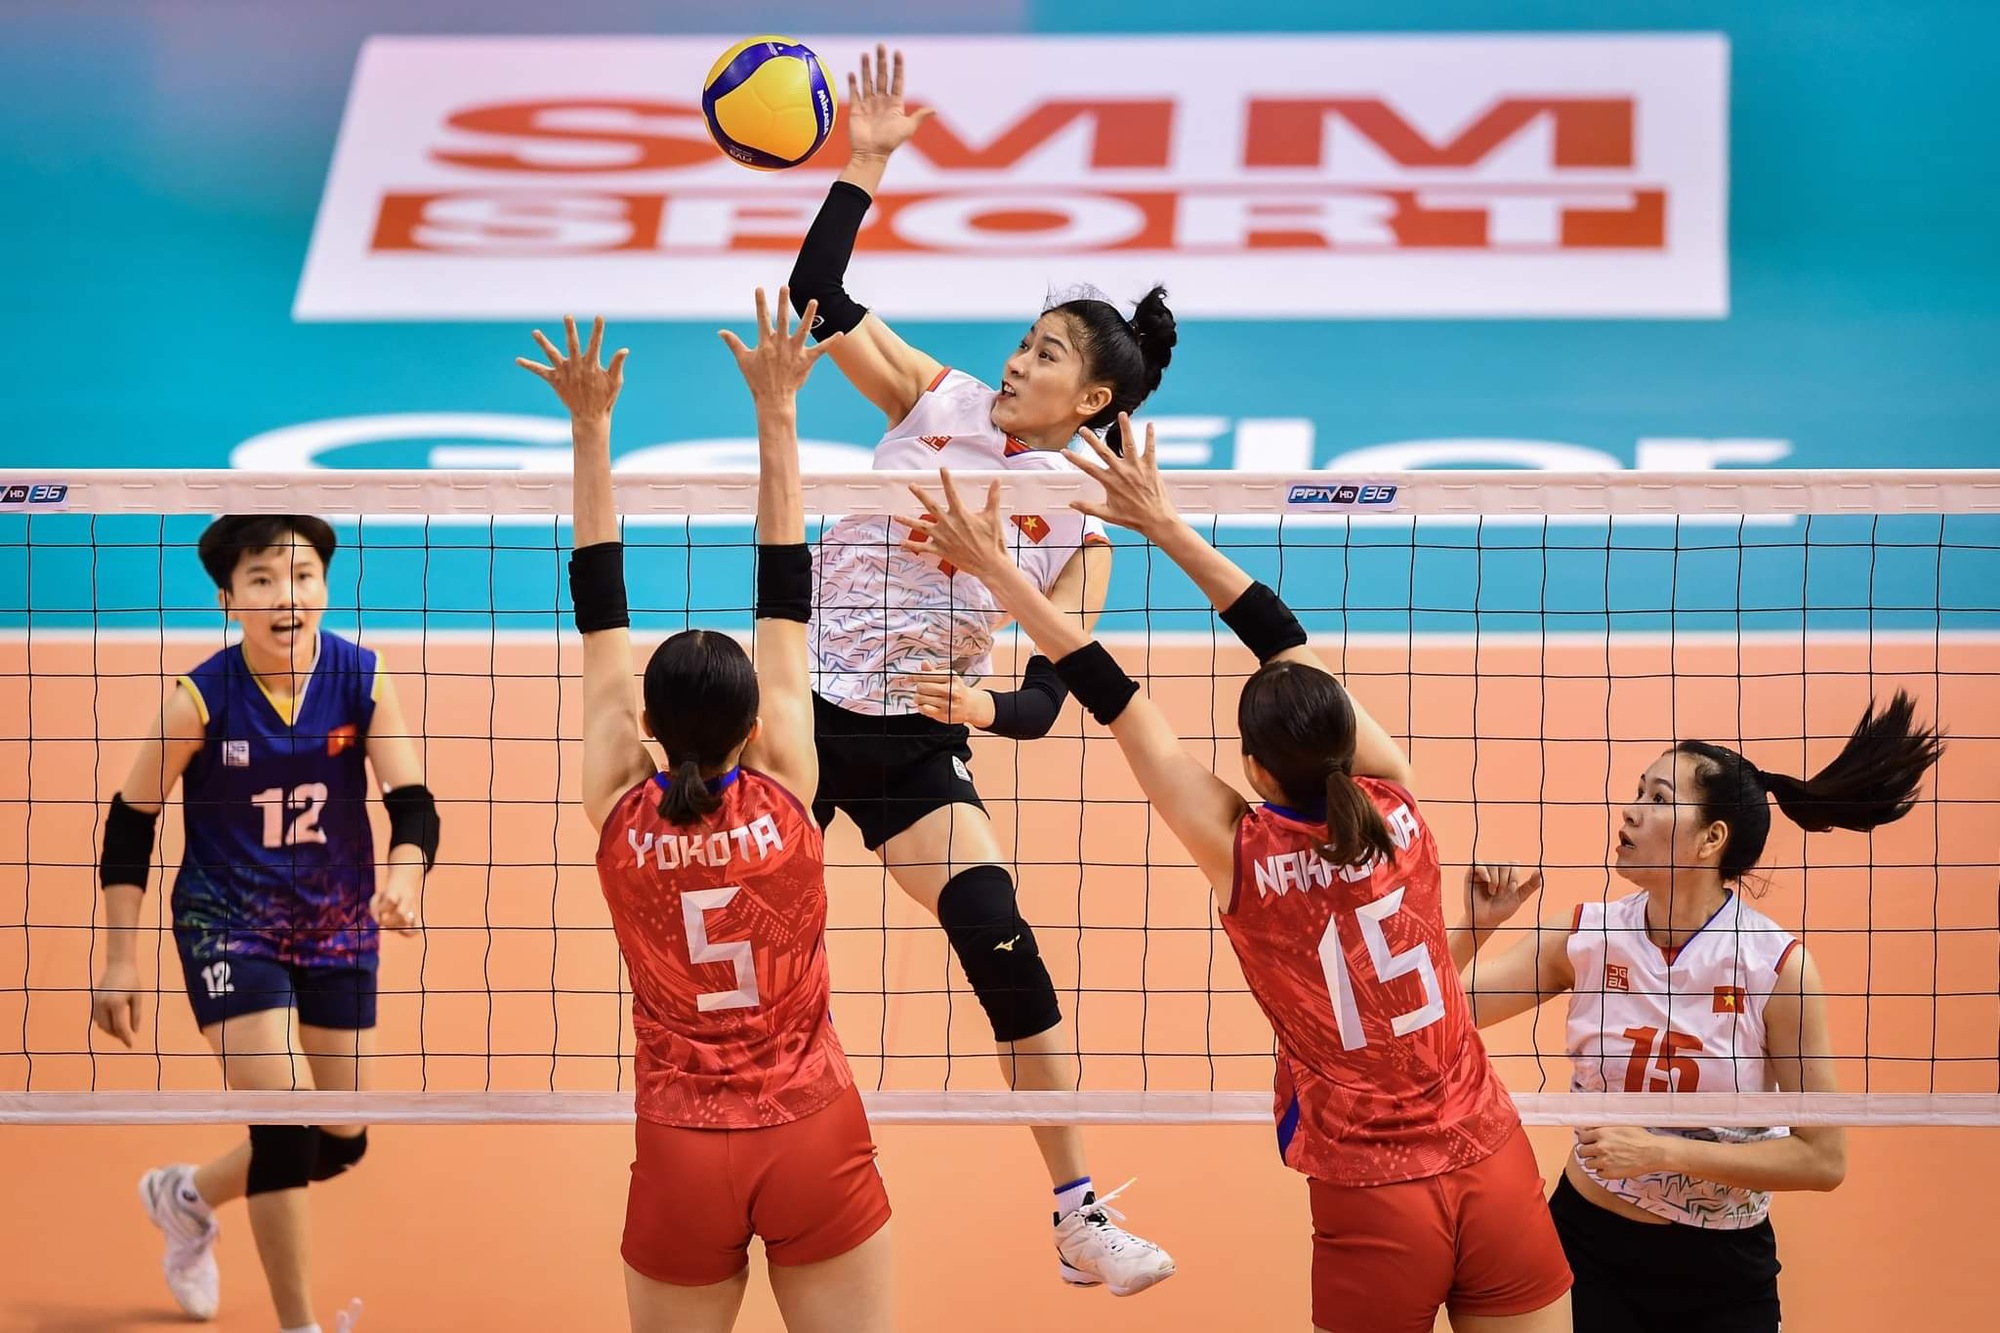 Thua ngược Nhật Bản, bóng chuyền nữ Việt Nam xếp hạng tư giải vô địch châu Á - Ảnh 1.